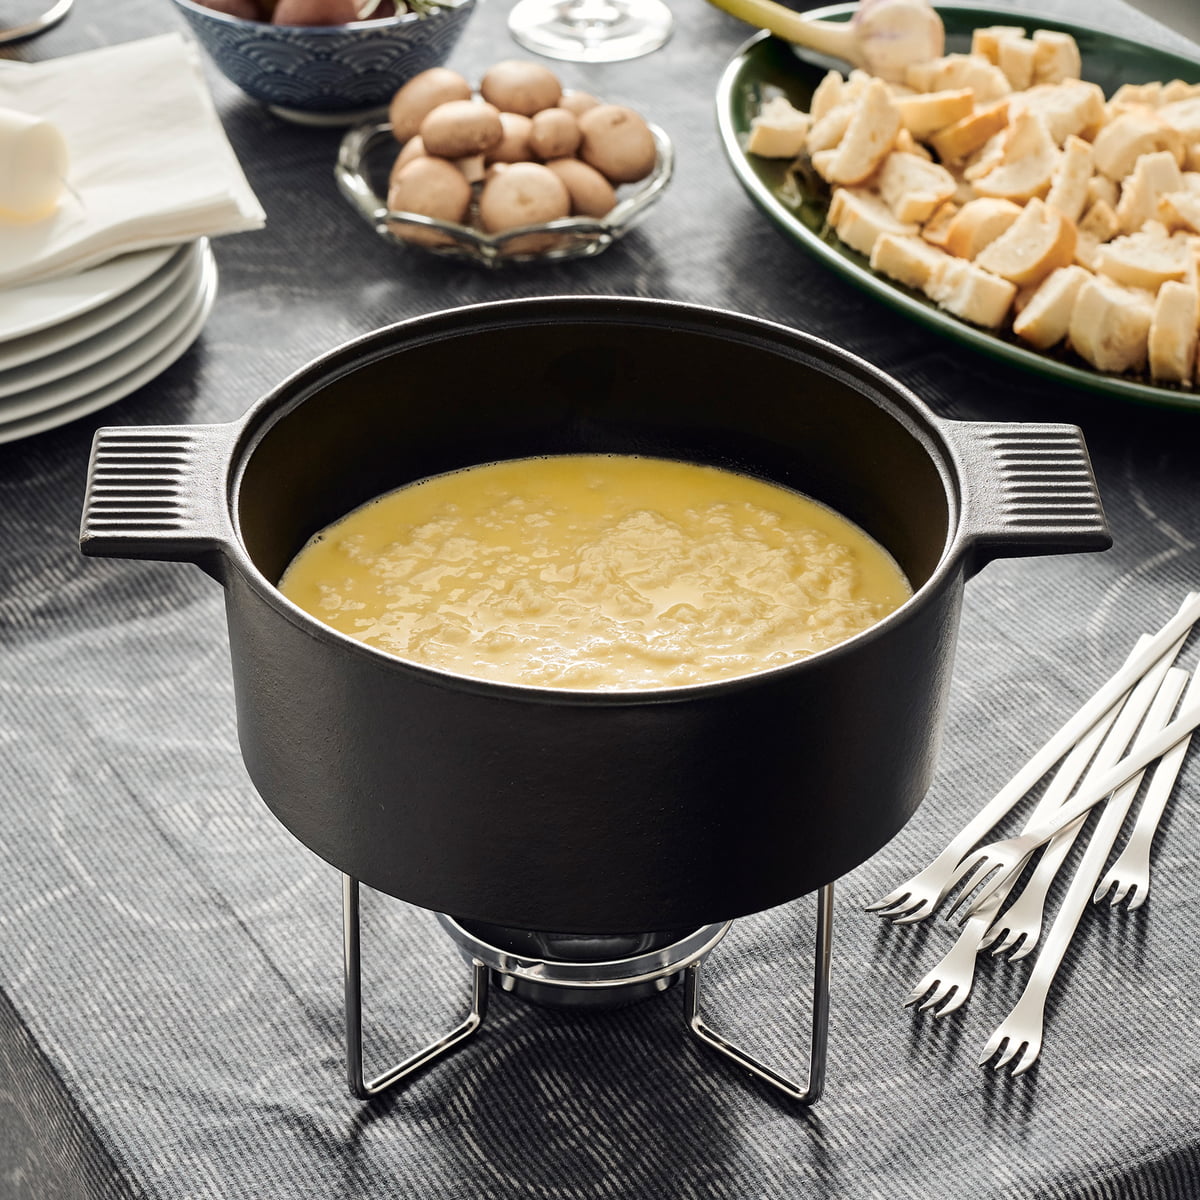 Design de fourchettes à fondue au fromage - TREND-ON-LINE